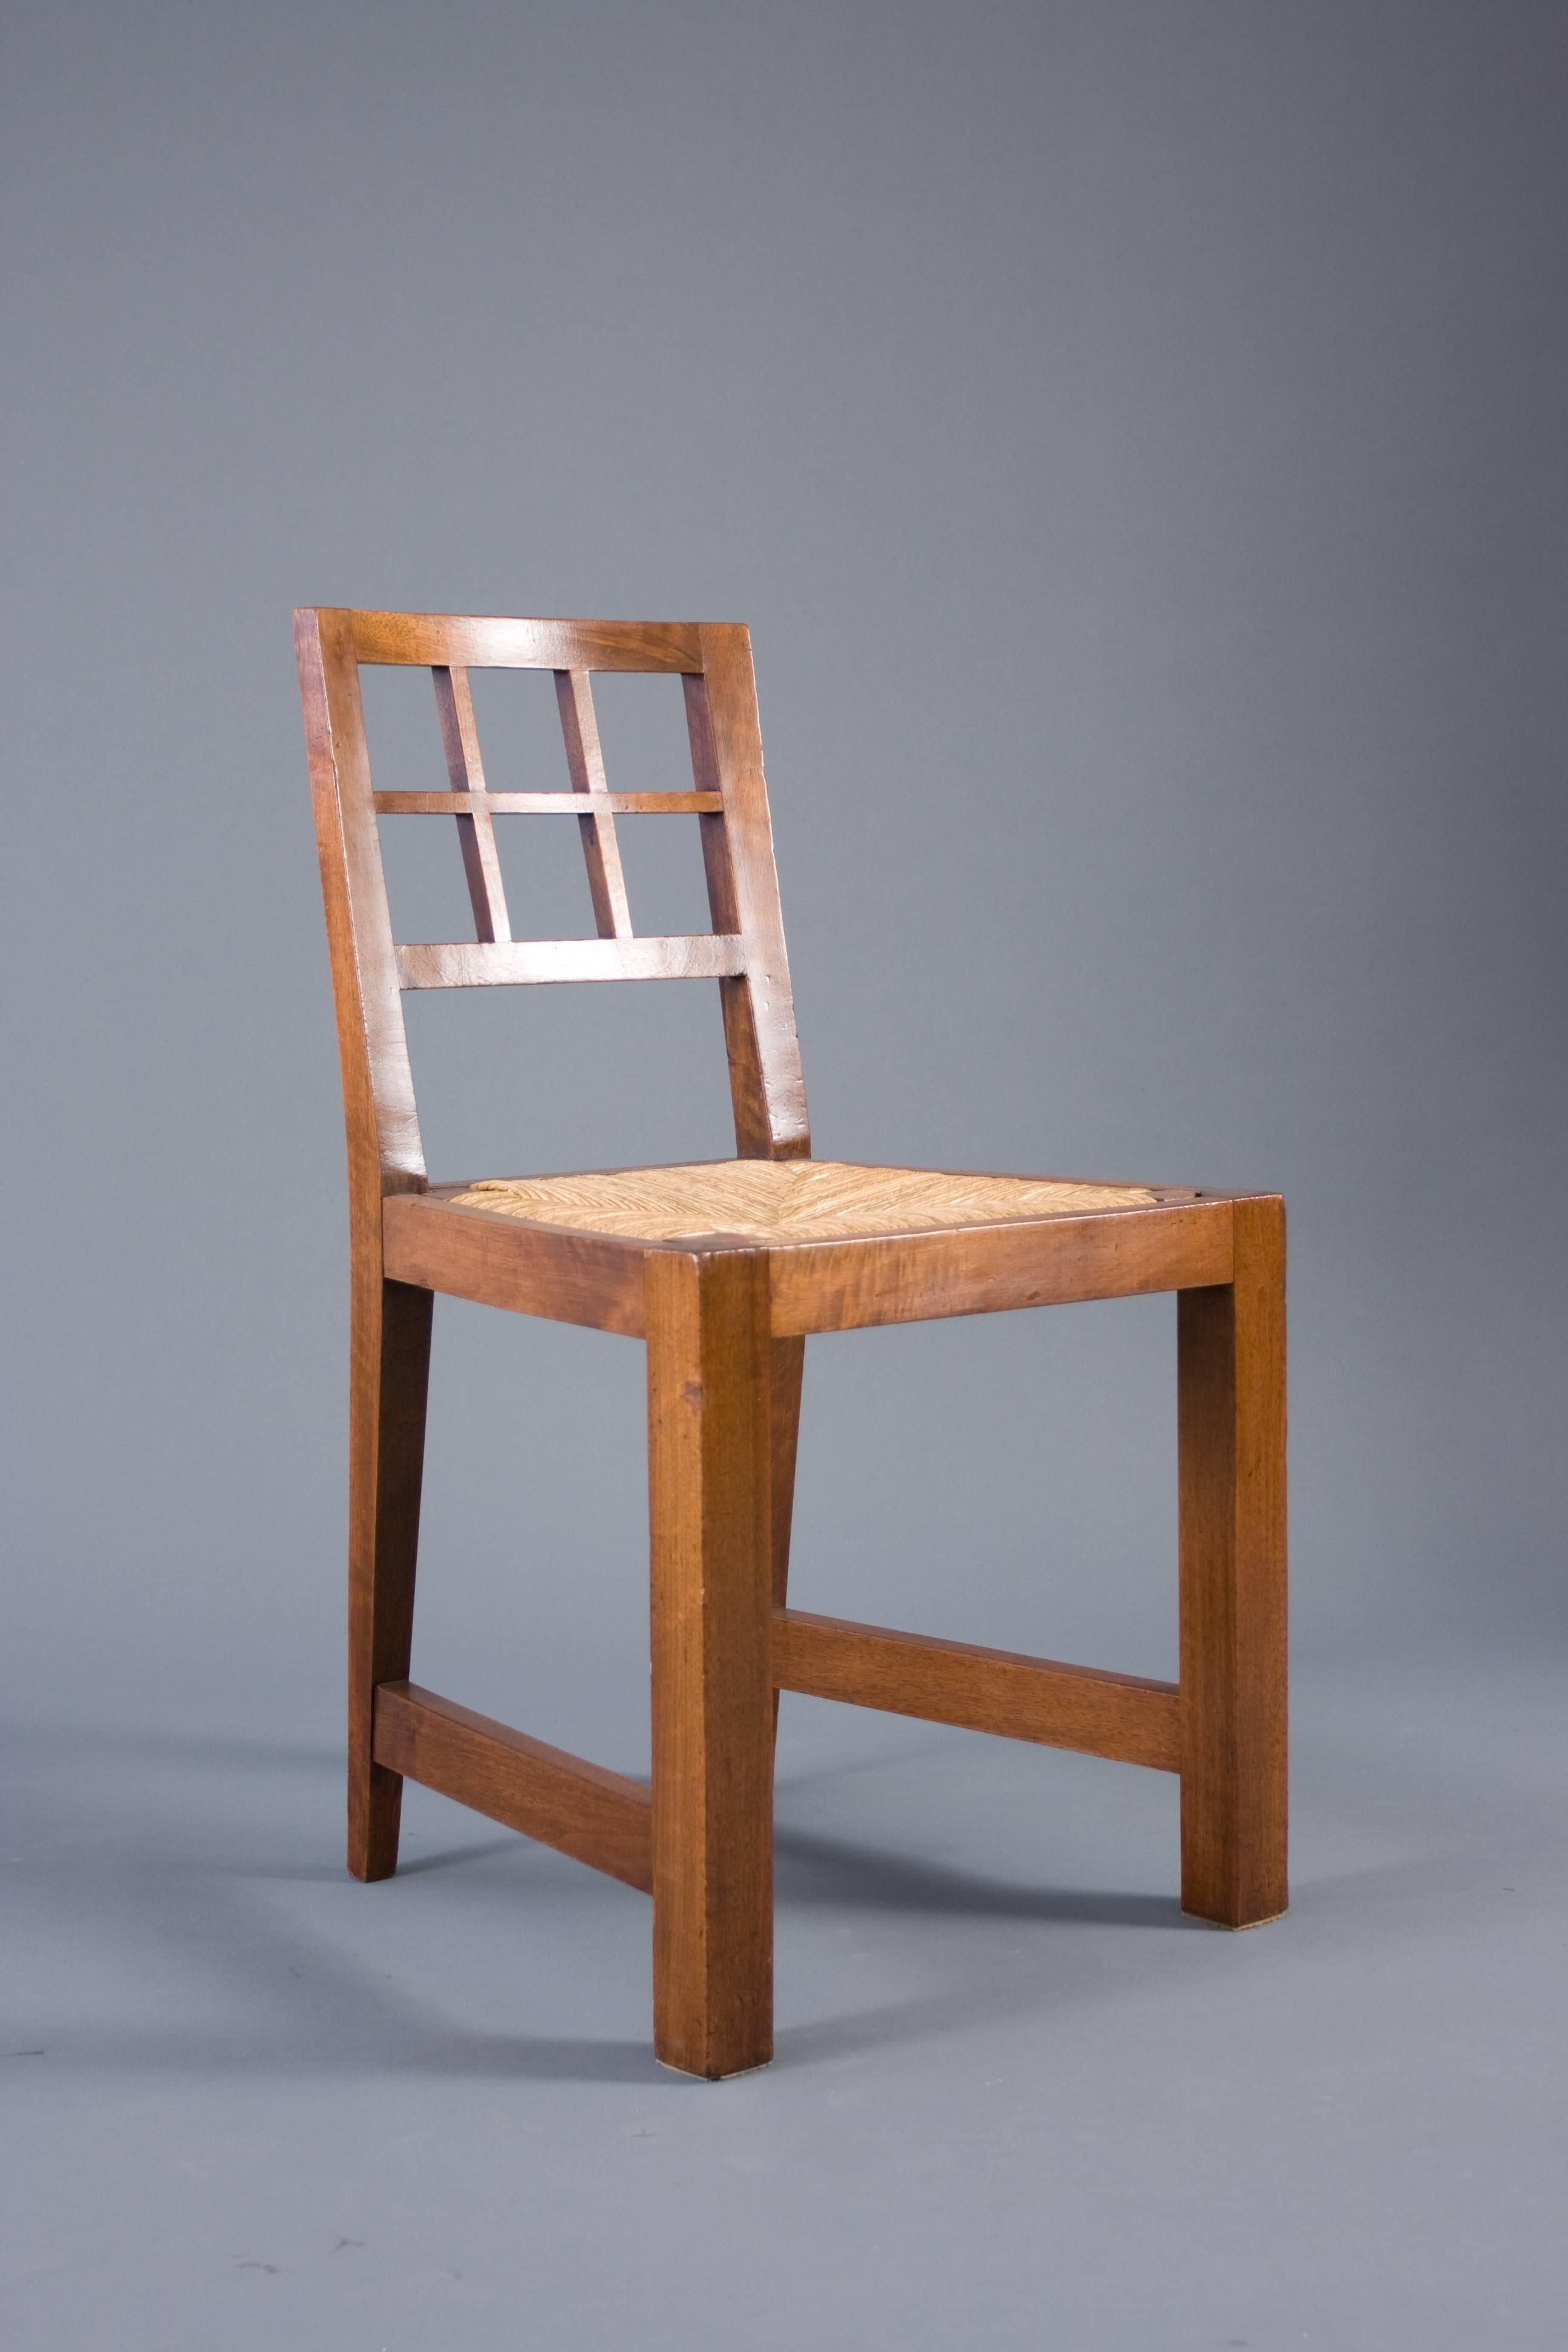 Un ensemble de six chaises (vendues individuellement) aux lignes modernistes typiques du travail de Francis Joirdain vers 1910-1920. Siège en osier amovible. 1200 $ par chaise.